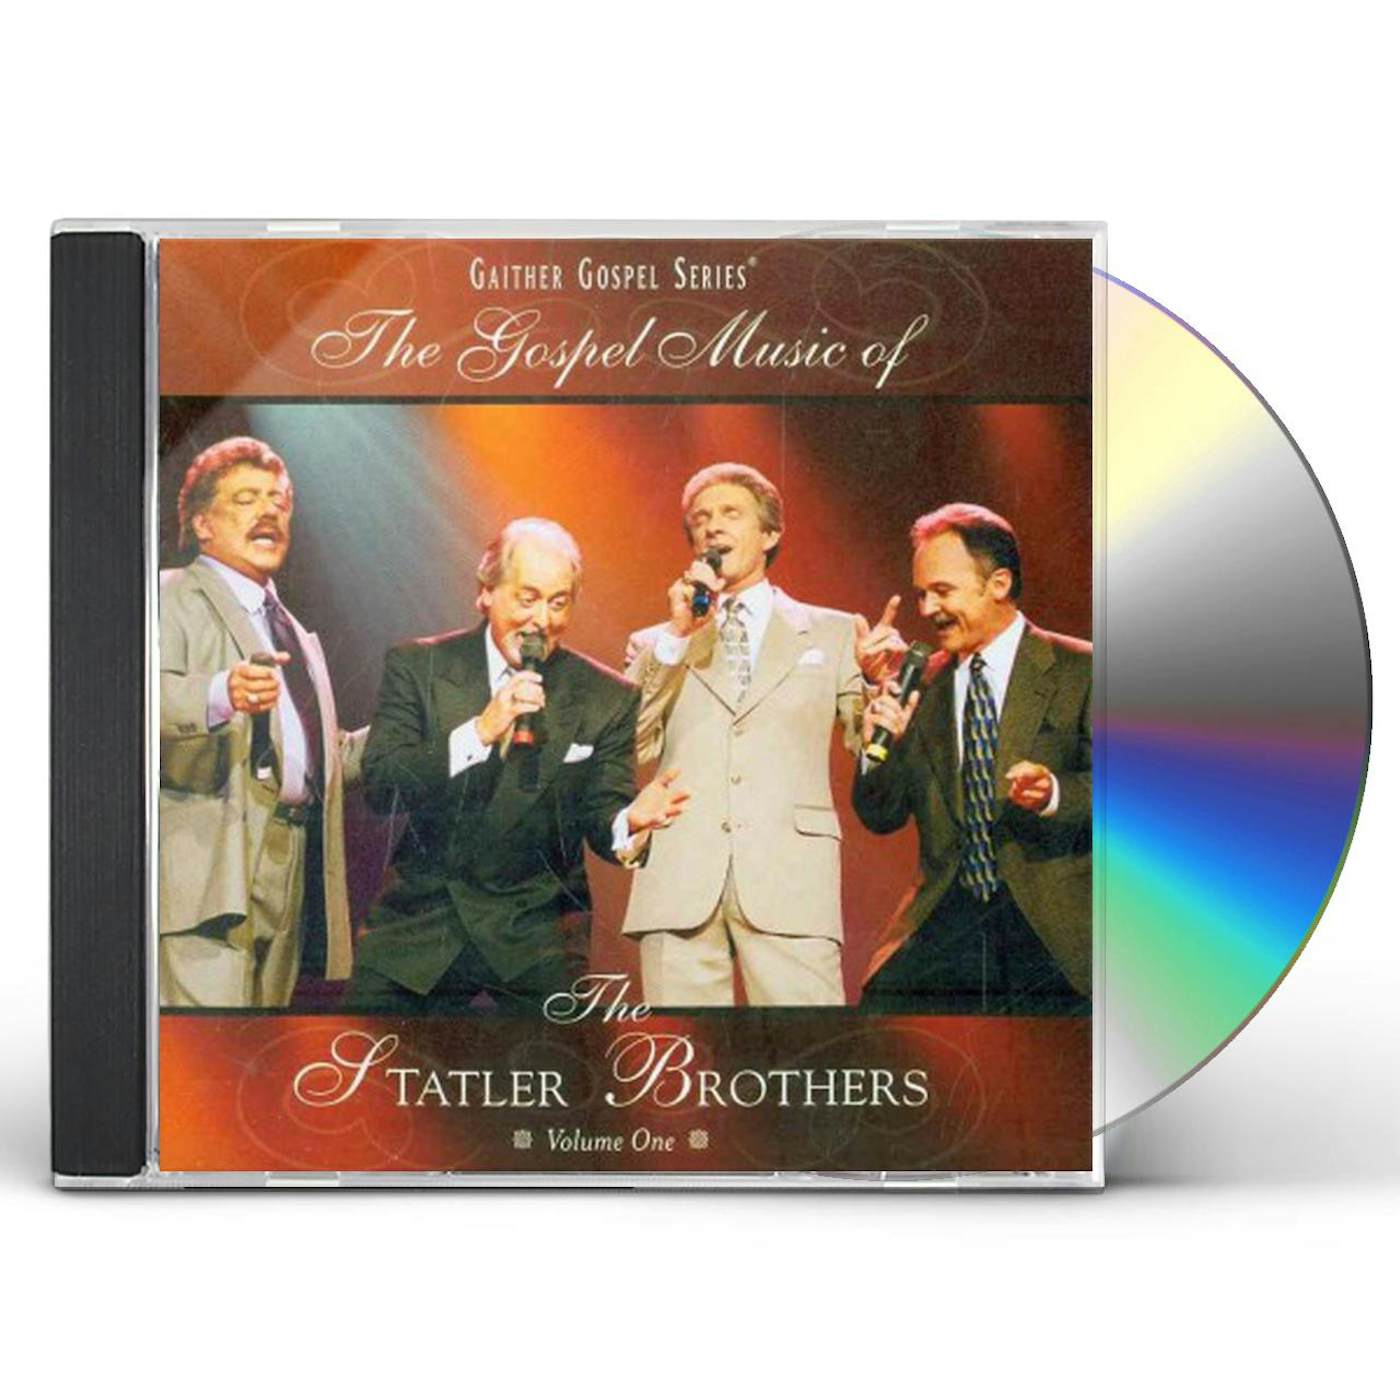 The Statler Brothers GOSPEL MUSIC 1 CD